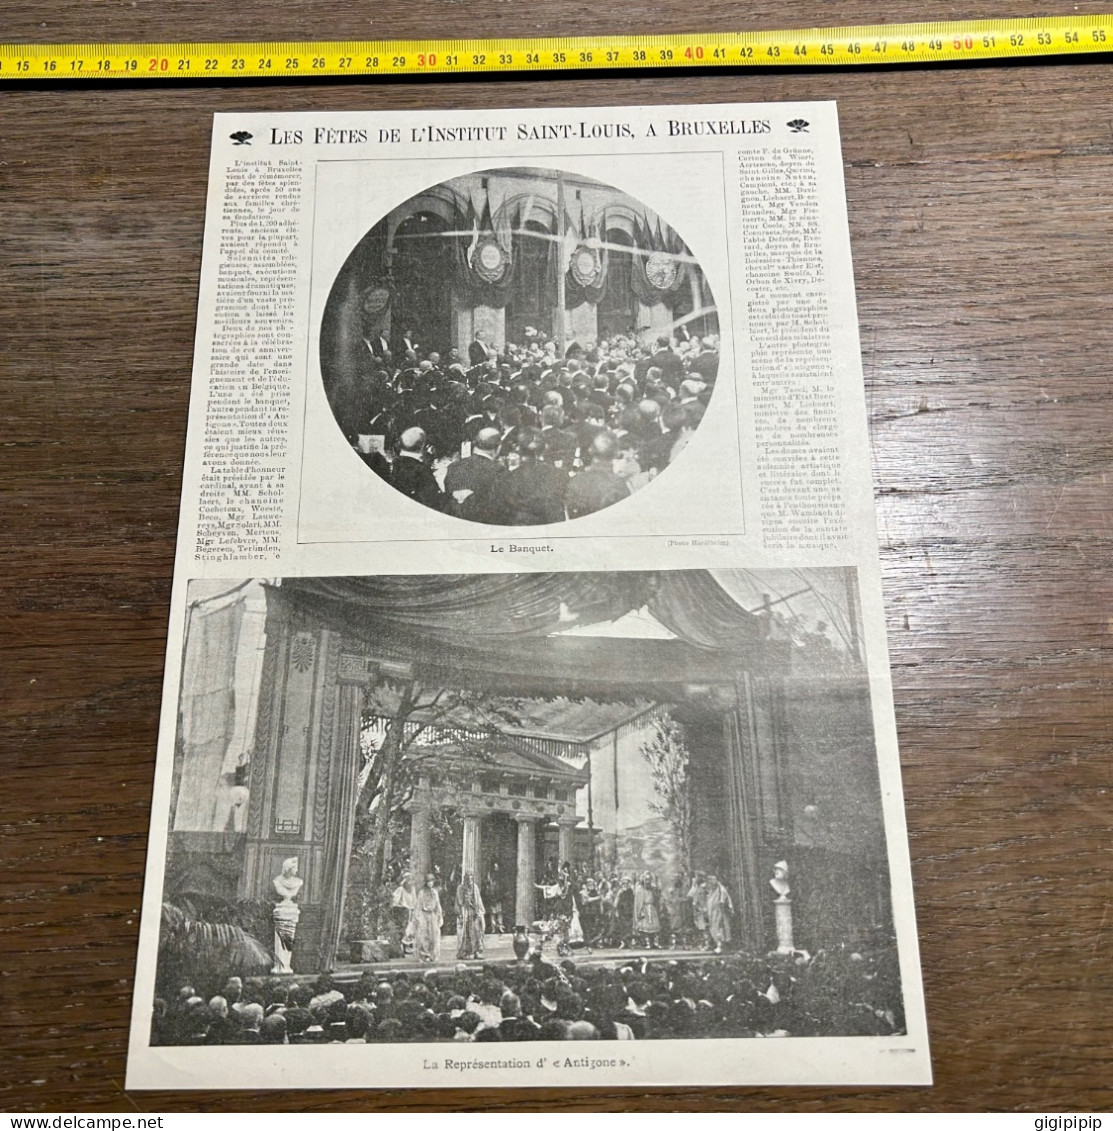 1908 PATI FÊTES DE LINSTITUT SAINT-LOUIS, A BRUXELLES Schollaert Antigone - Collections